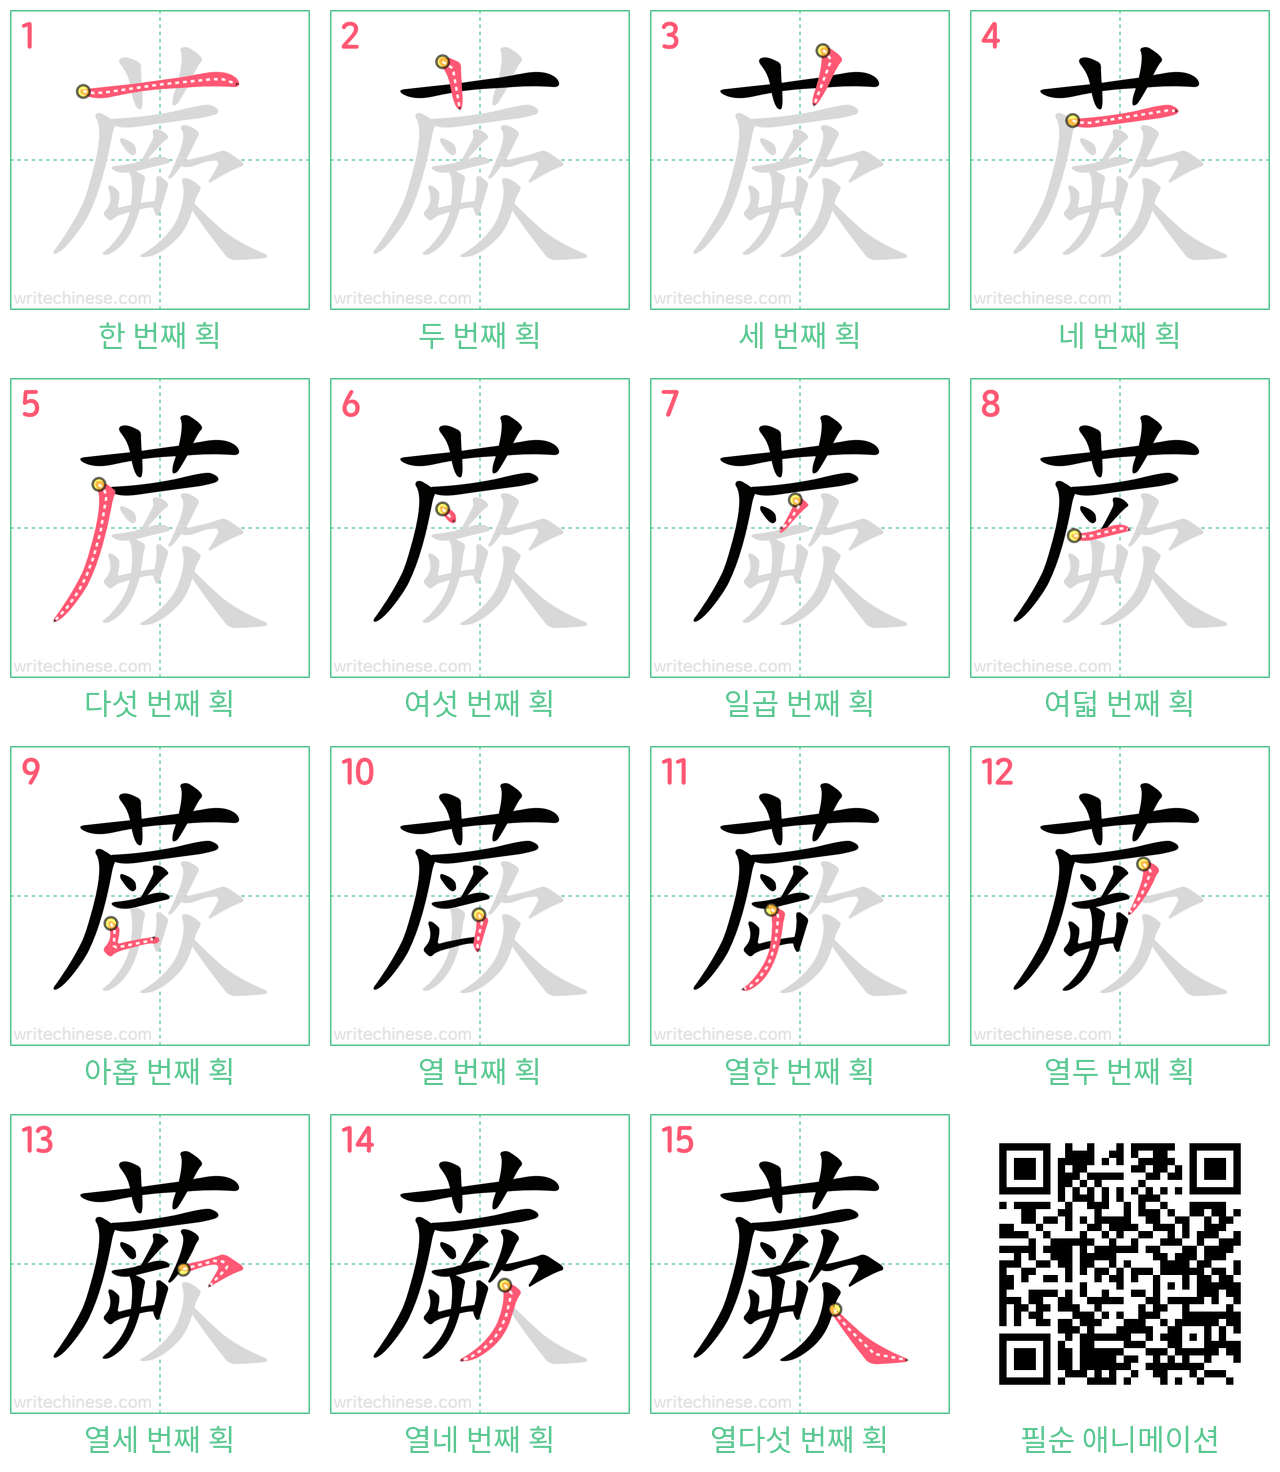 蕨 step-by-step stroke order diagrams